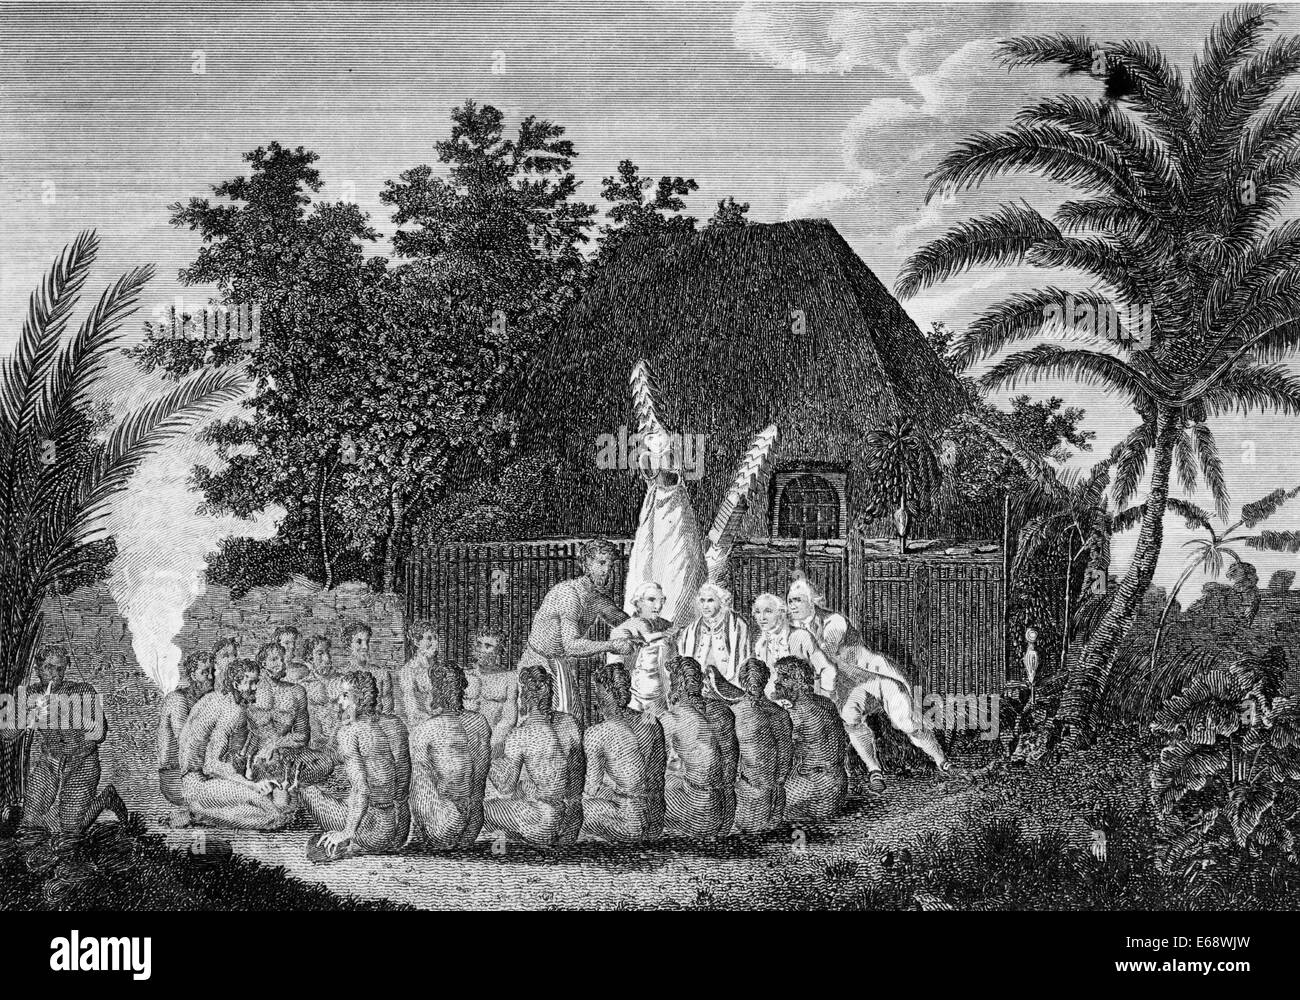 Un offerta prima del Capitano Cook nel Sandwich Islands - il Capitano James Cook e quattro dei suoi uomini con i nativi, Hawaii, 1770 Foto Stock